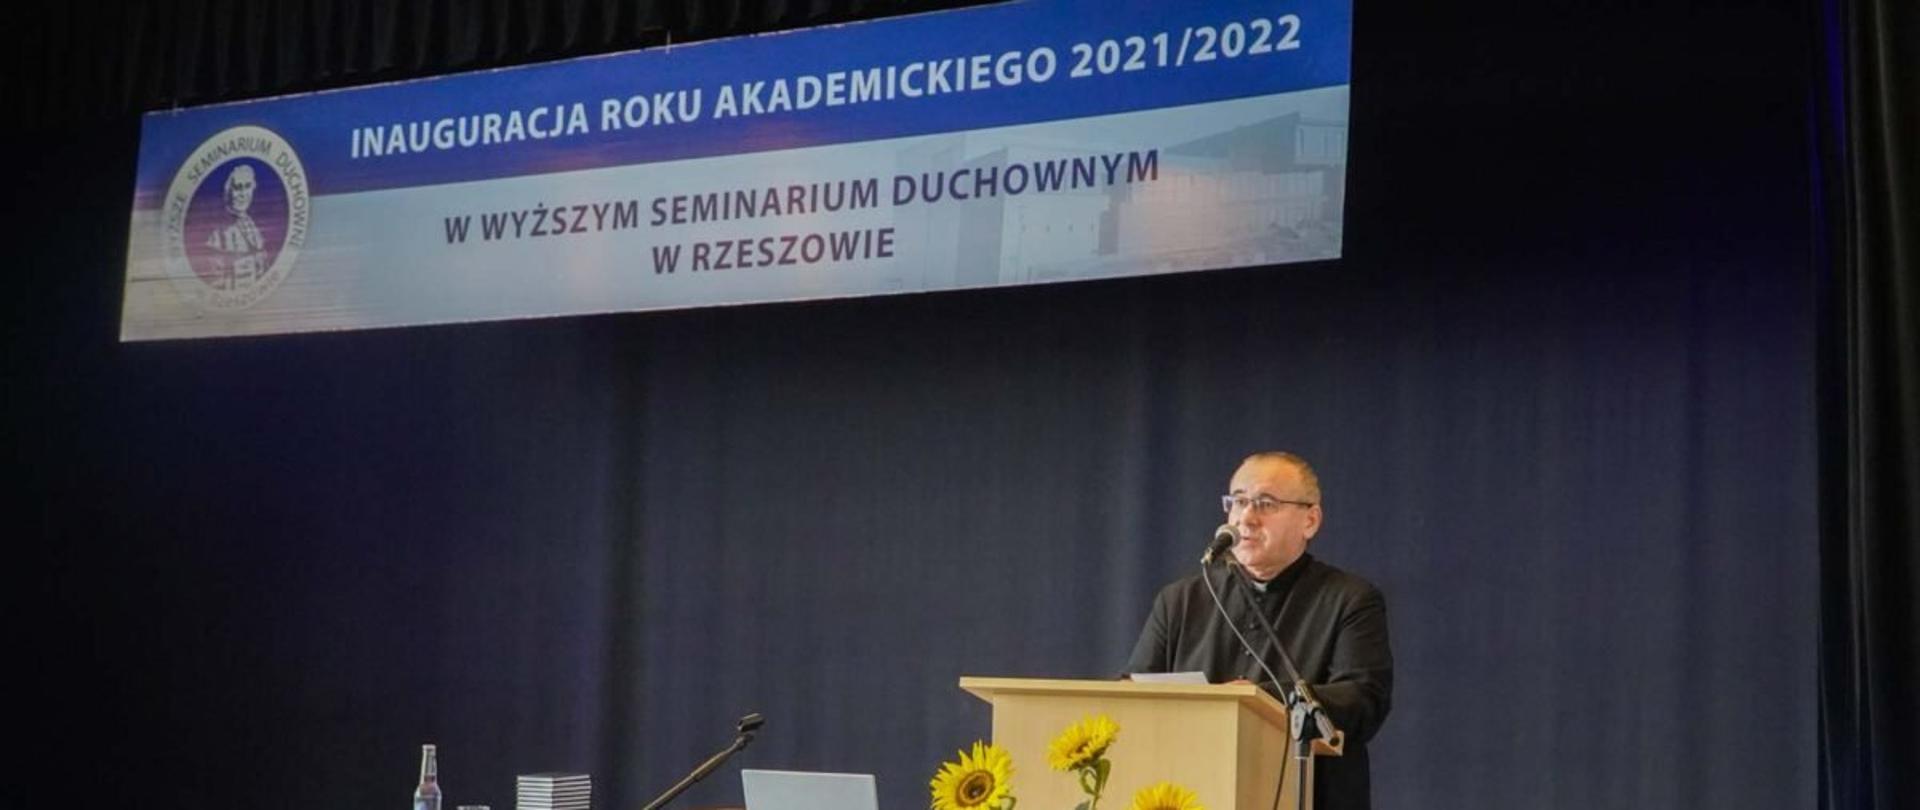 Inauguracja roku akademickiego w Wyższym Seminarium Duchownym w Rzeszowie